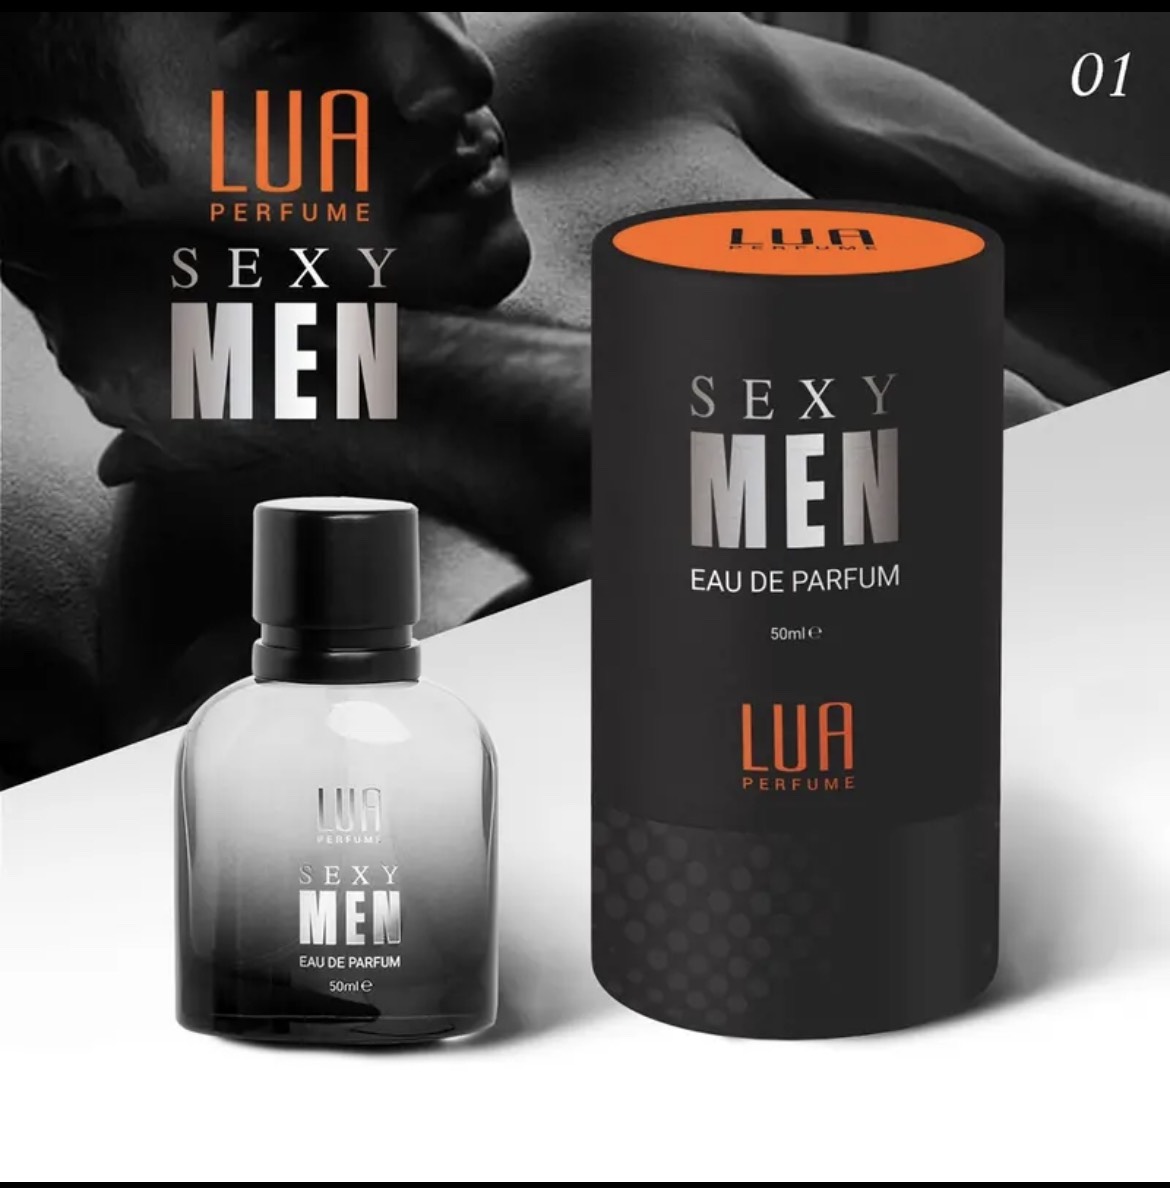 Nước Hoa Nam Sexy Men Phiên Bản Mới 50ml Lua Perfume Chính Hãng - 8936095372277